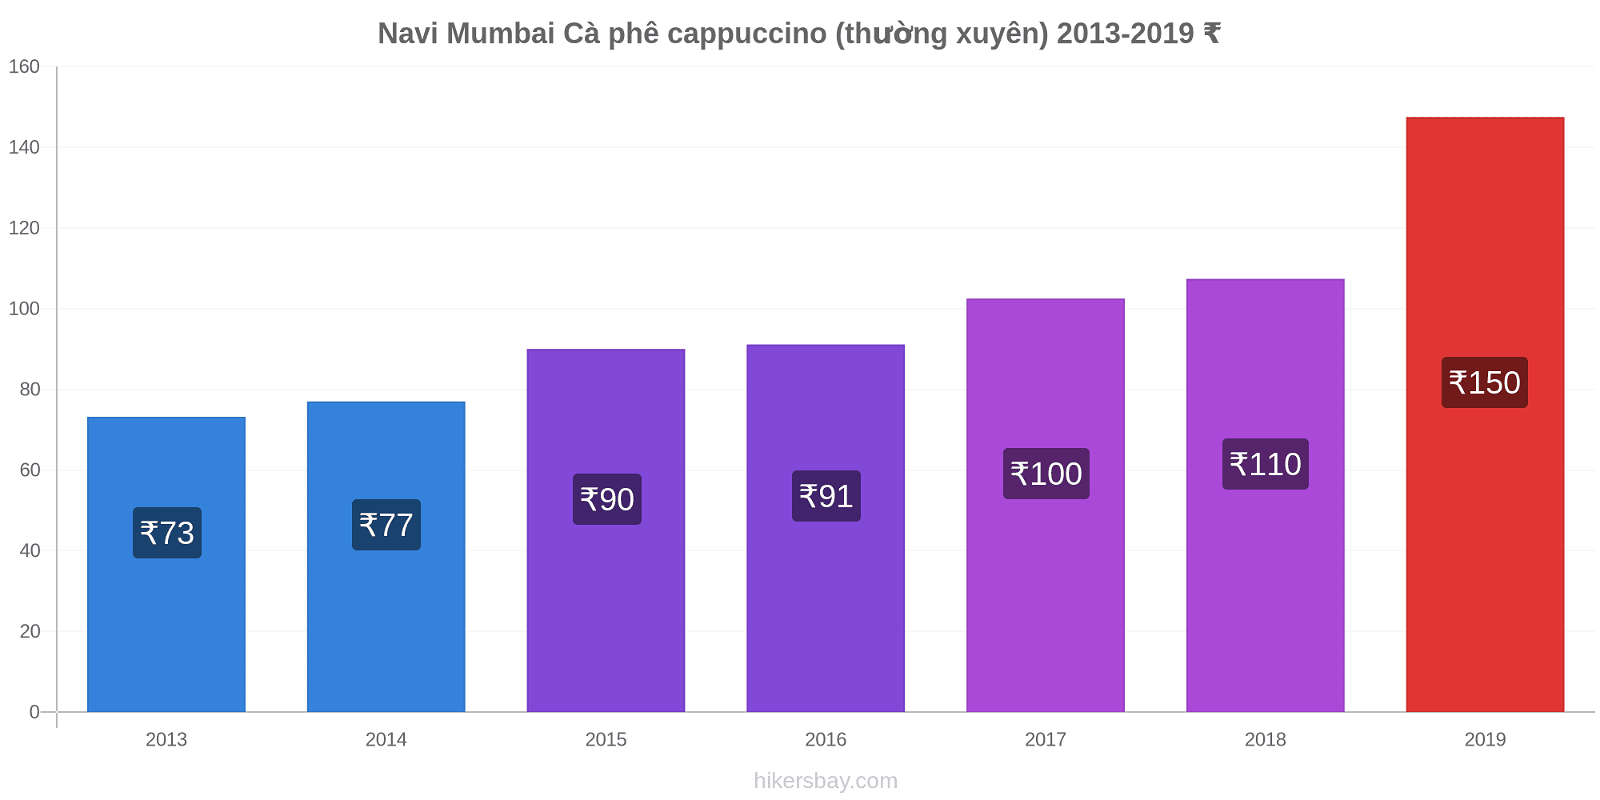 Navi Mumbai thay đổi giá Cà phê cappuccino (thường xuyên) hikersbay.com